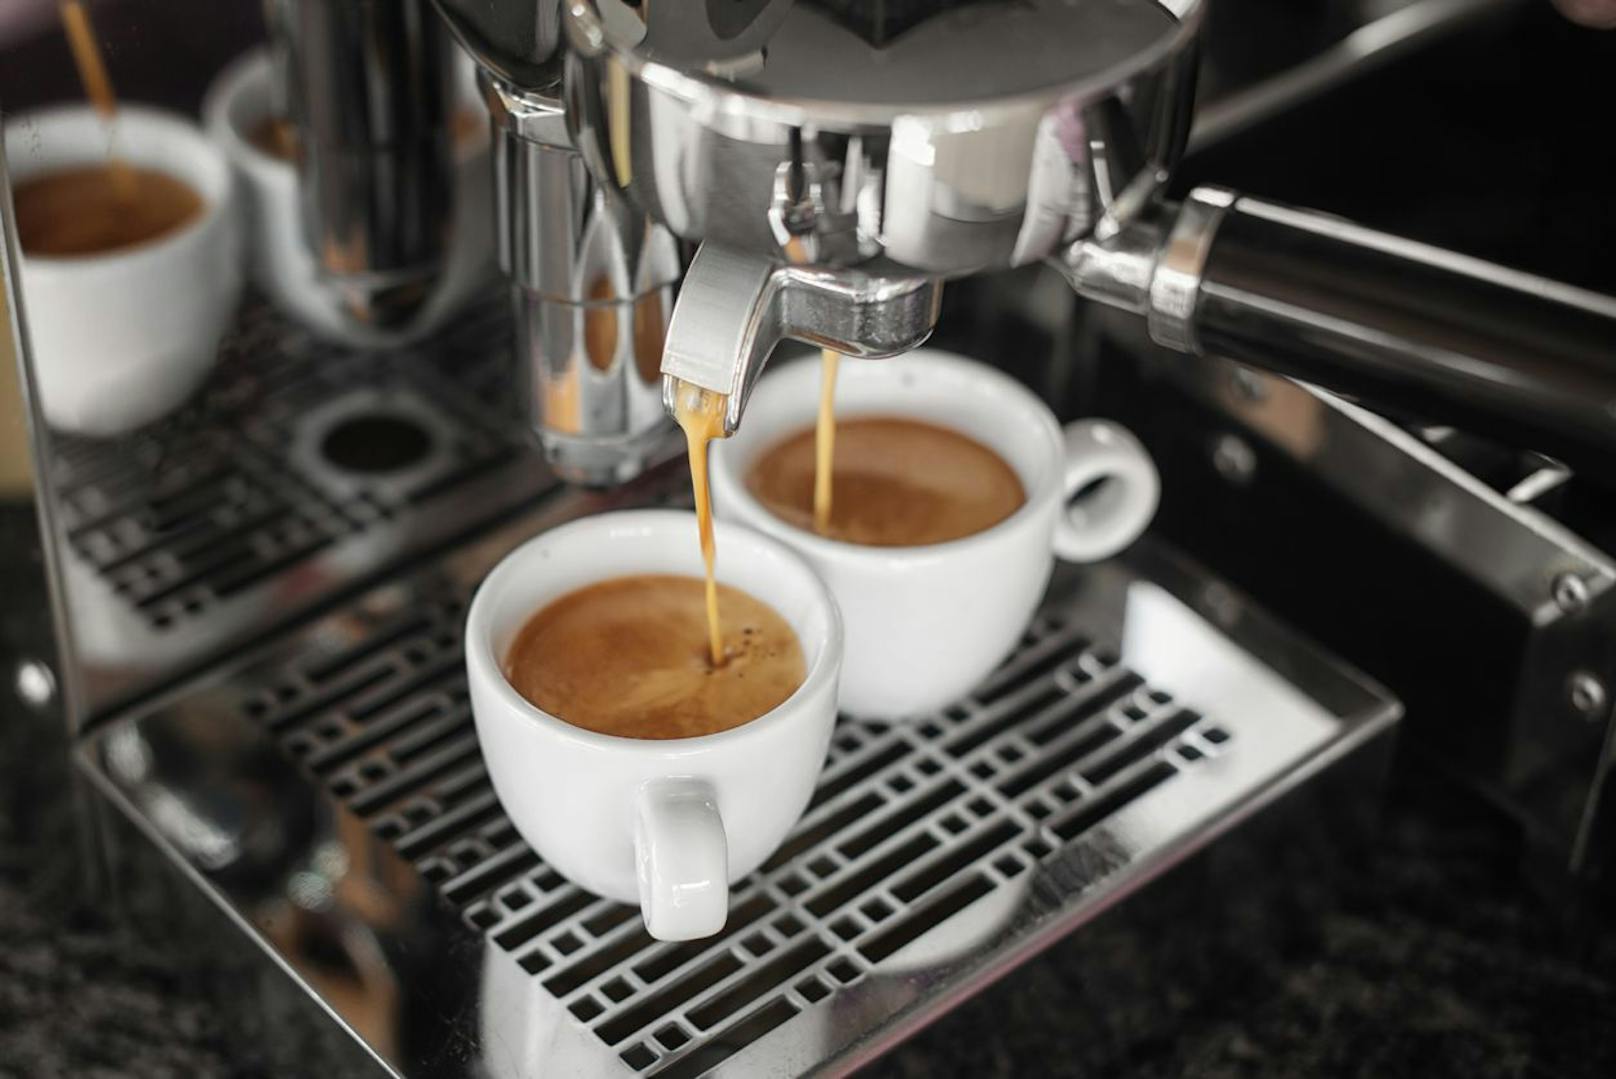 Wer in Italien einen Caffé bestellt, bekommt traditionell einen Espresso.